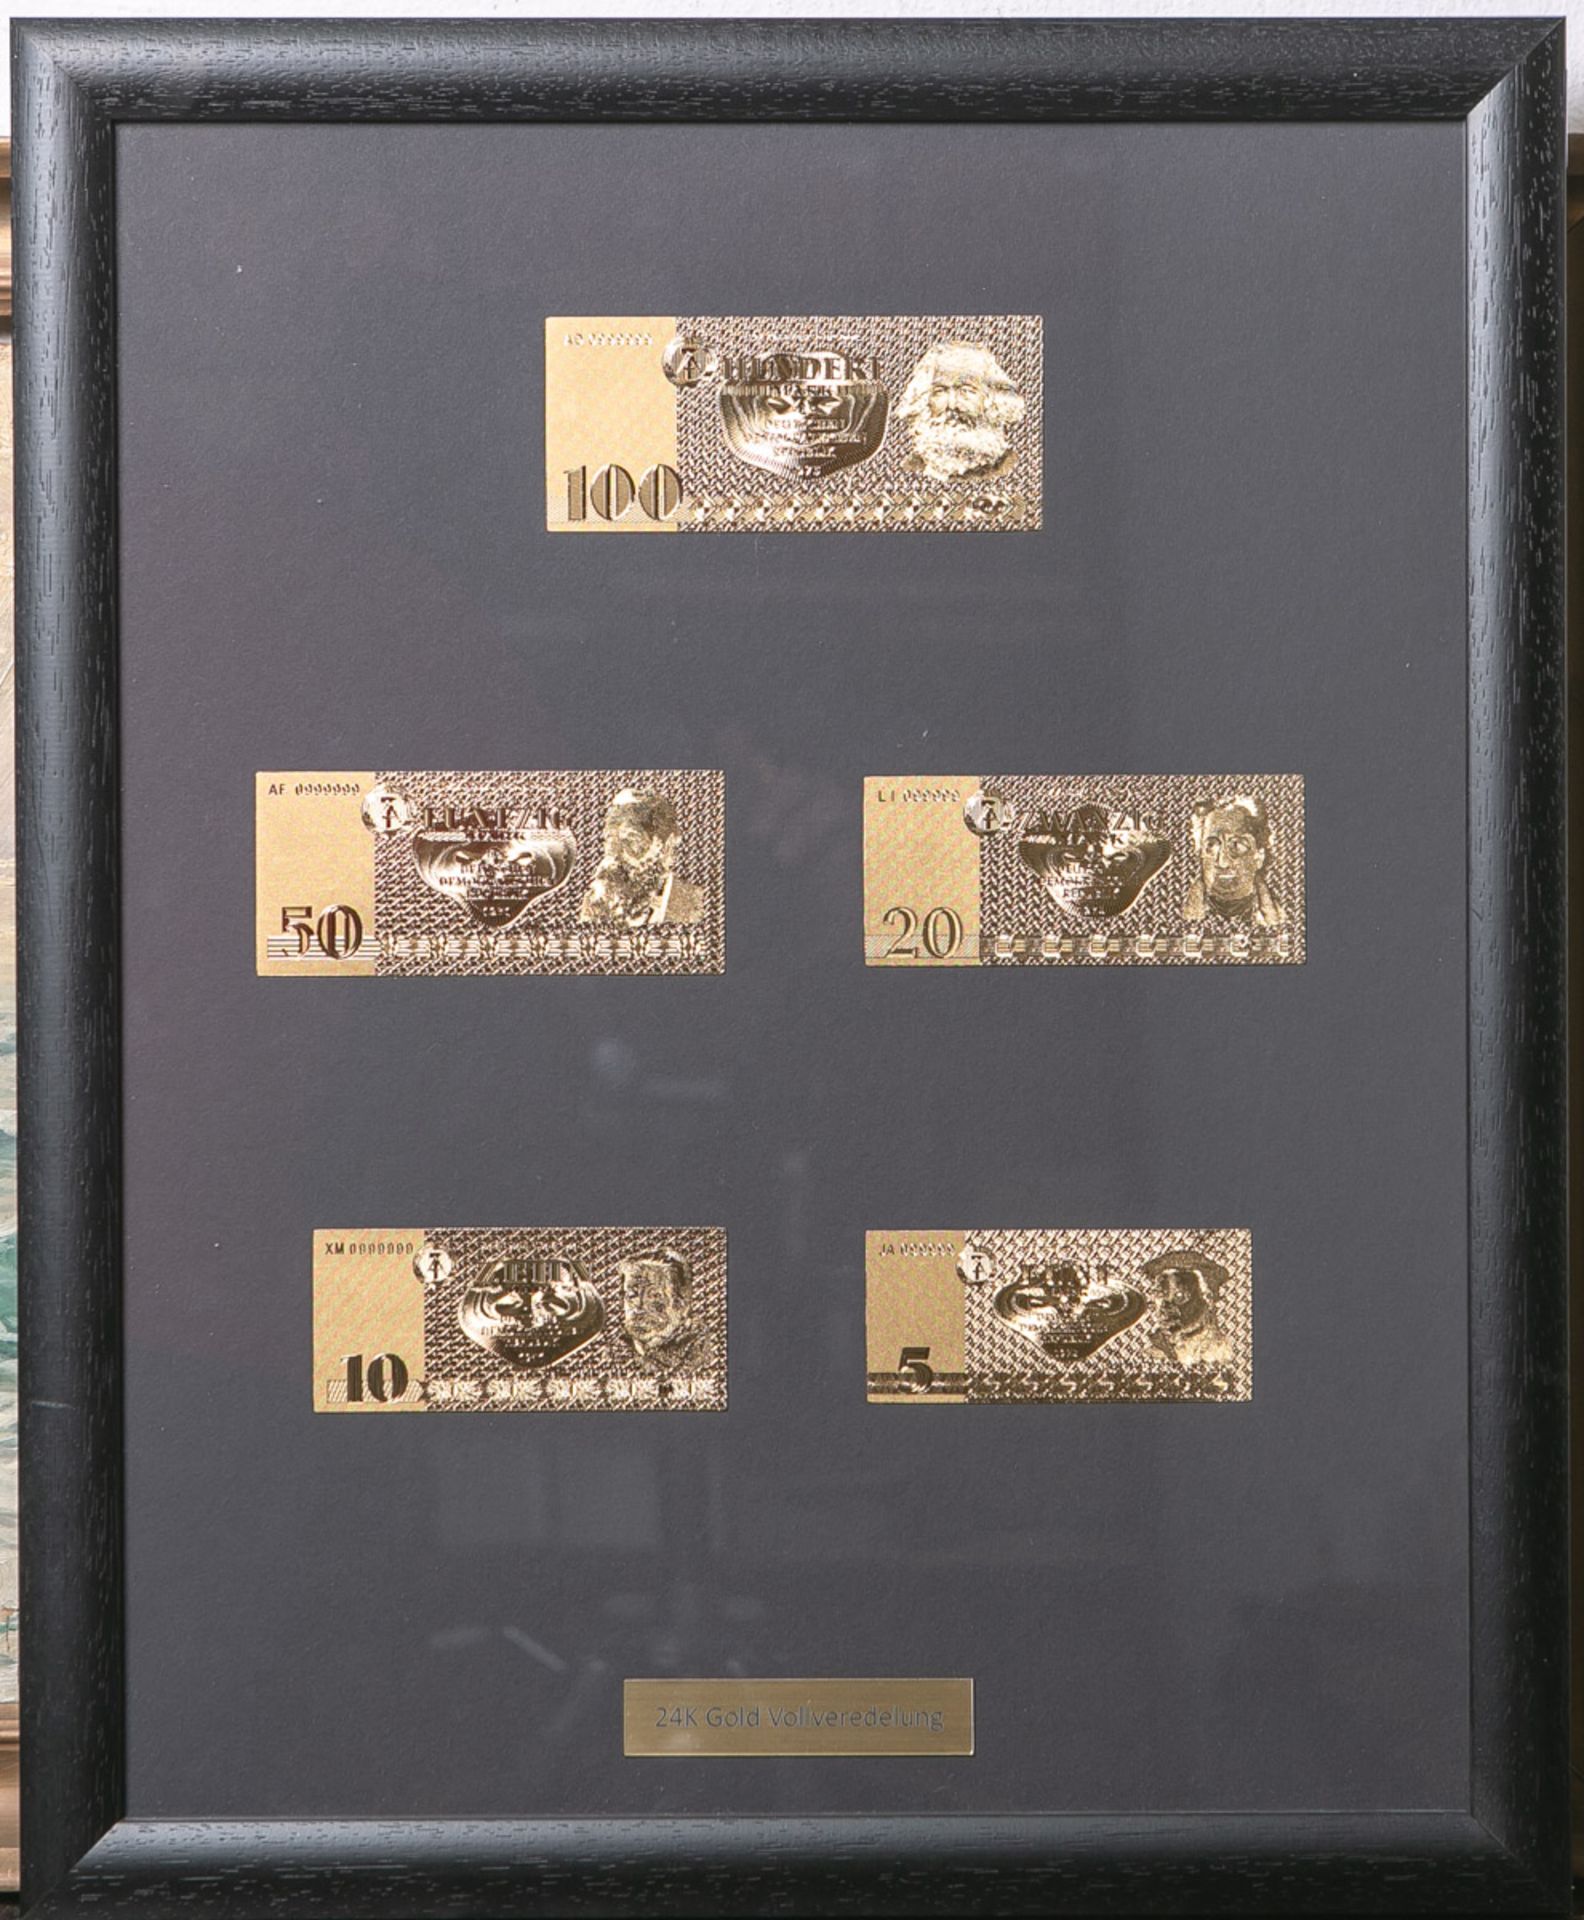 DDR-Geldscheine/Banknoten (5 Stück), in 24 K Gold-Vollveredelung, 5 Mark-100 Mark, ca. 55 x 45 cm,